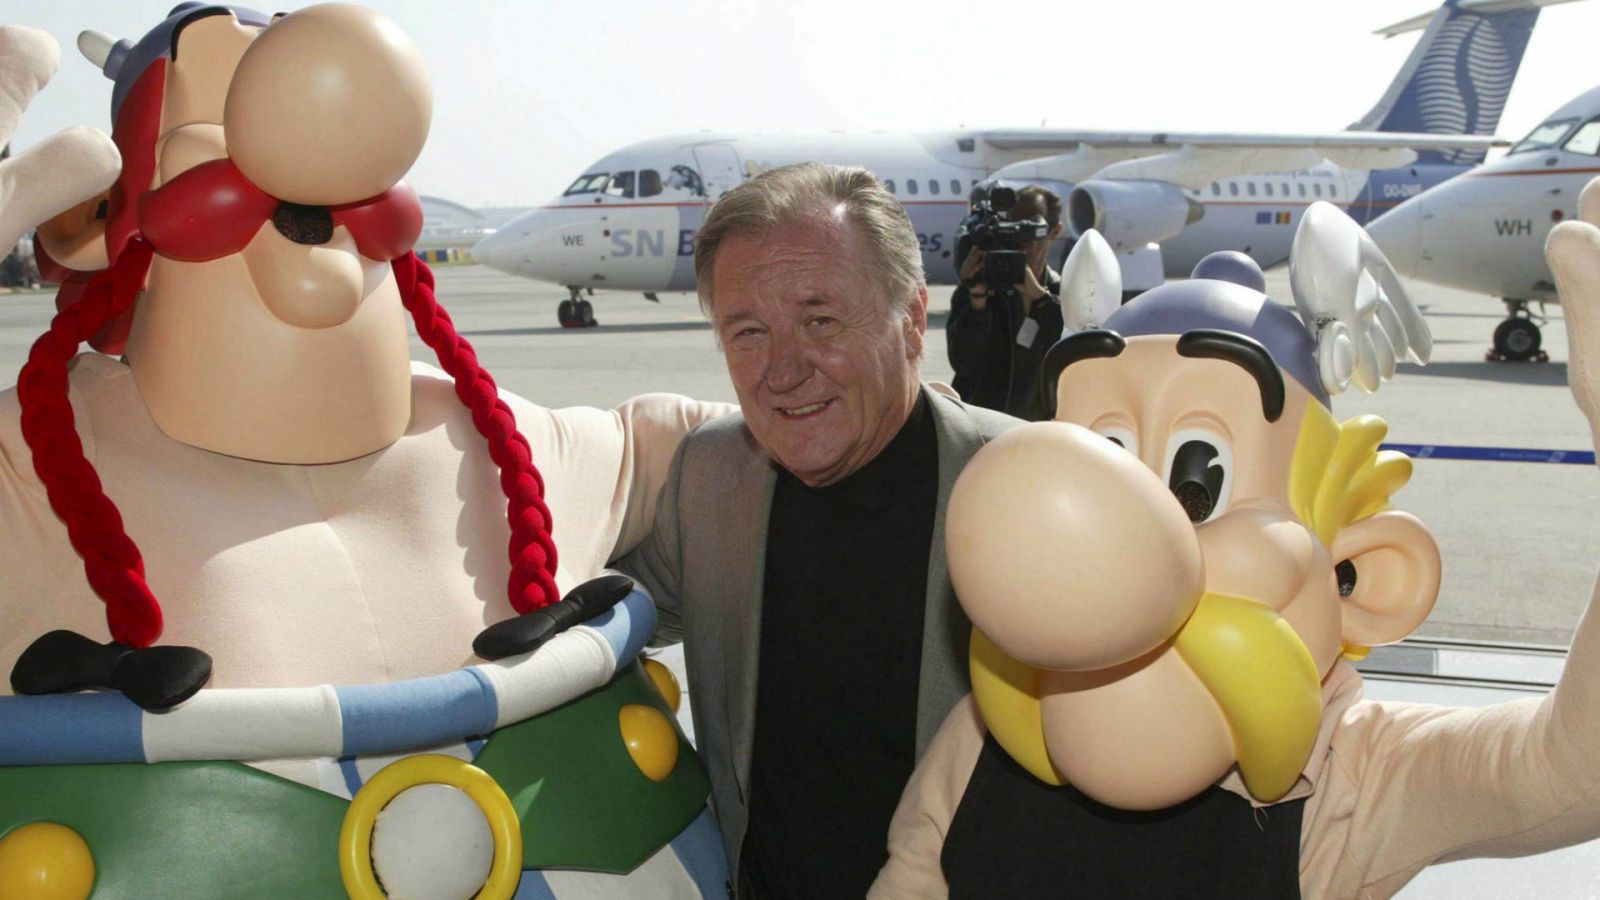  Boletines RNE - Muere el dibujante Albert Uderzo, uno de los creadores de 'Asterix' - Escuchar ahora